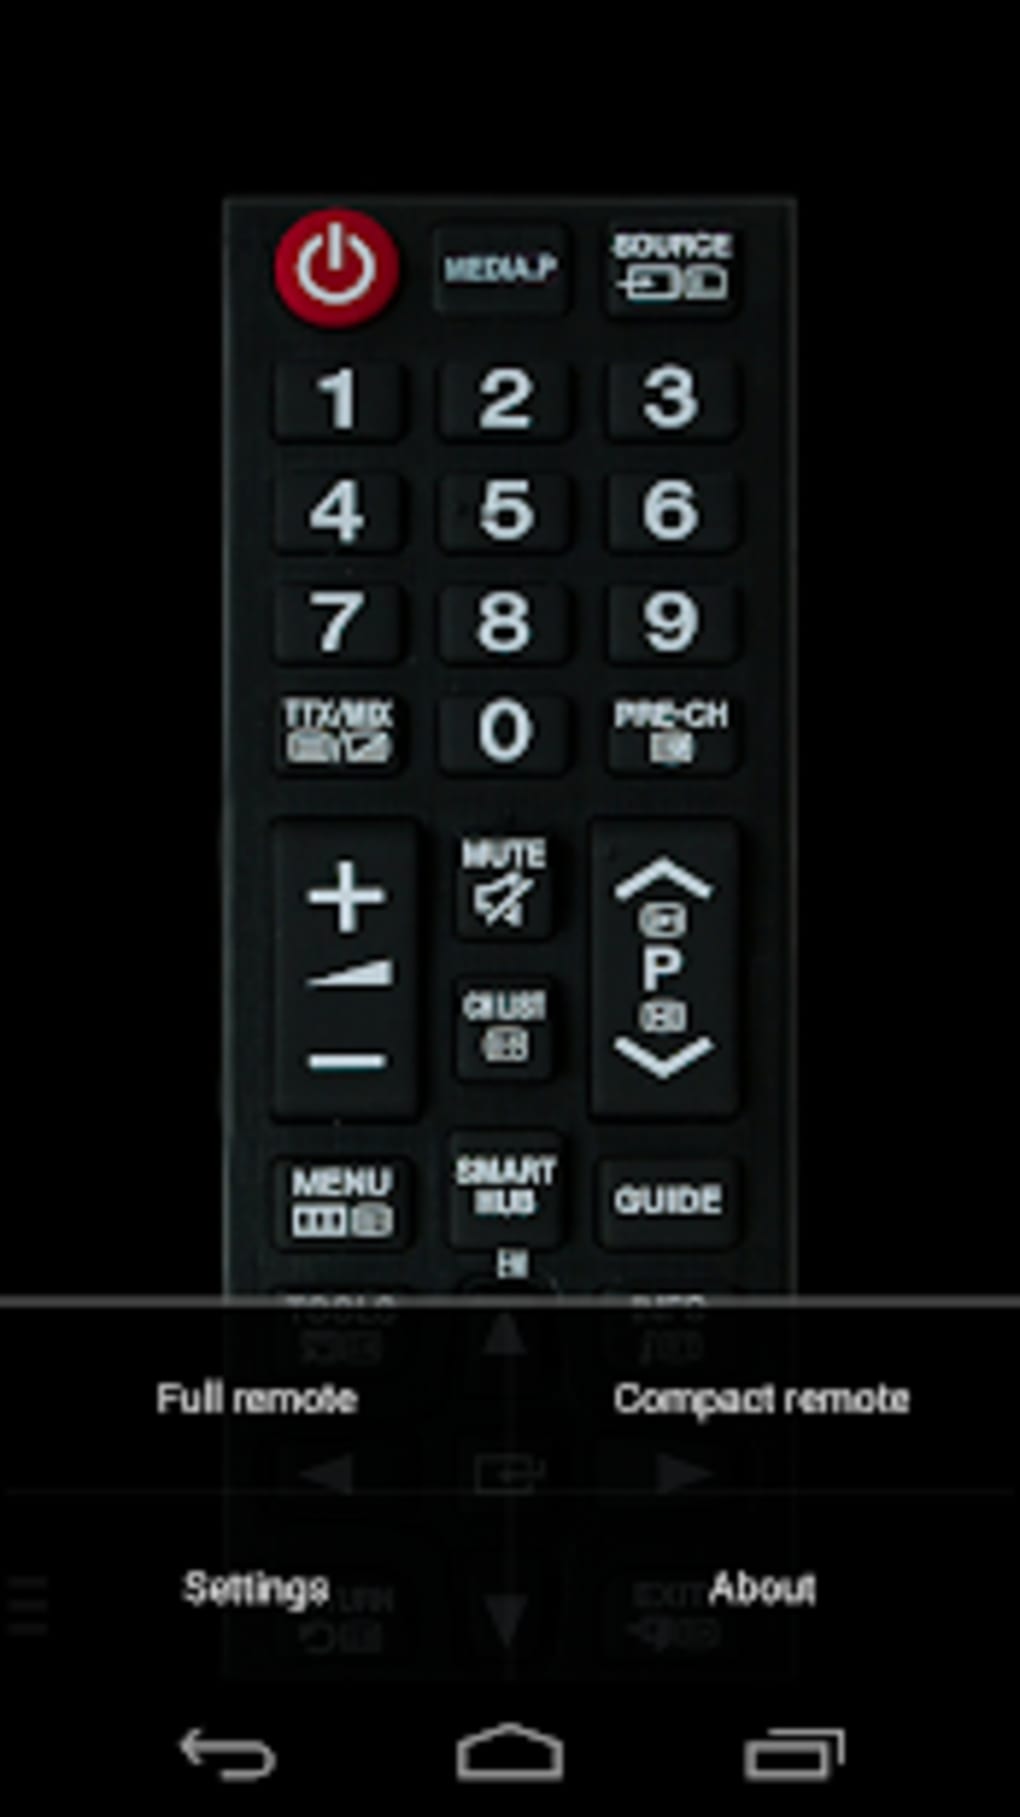 TV Samsung Remote Control APK Android - Descargar